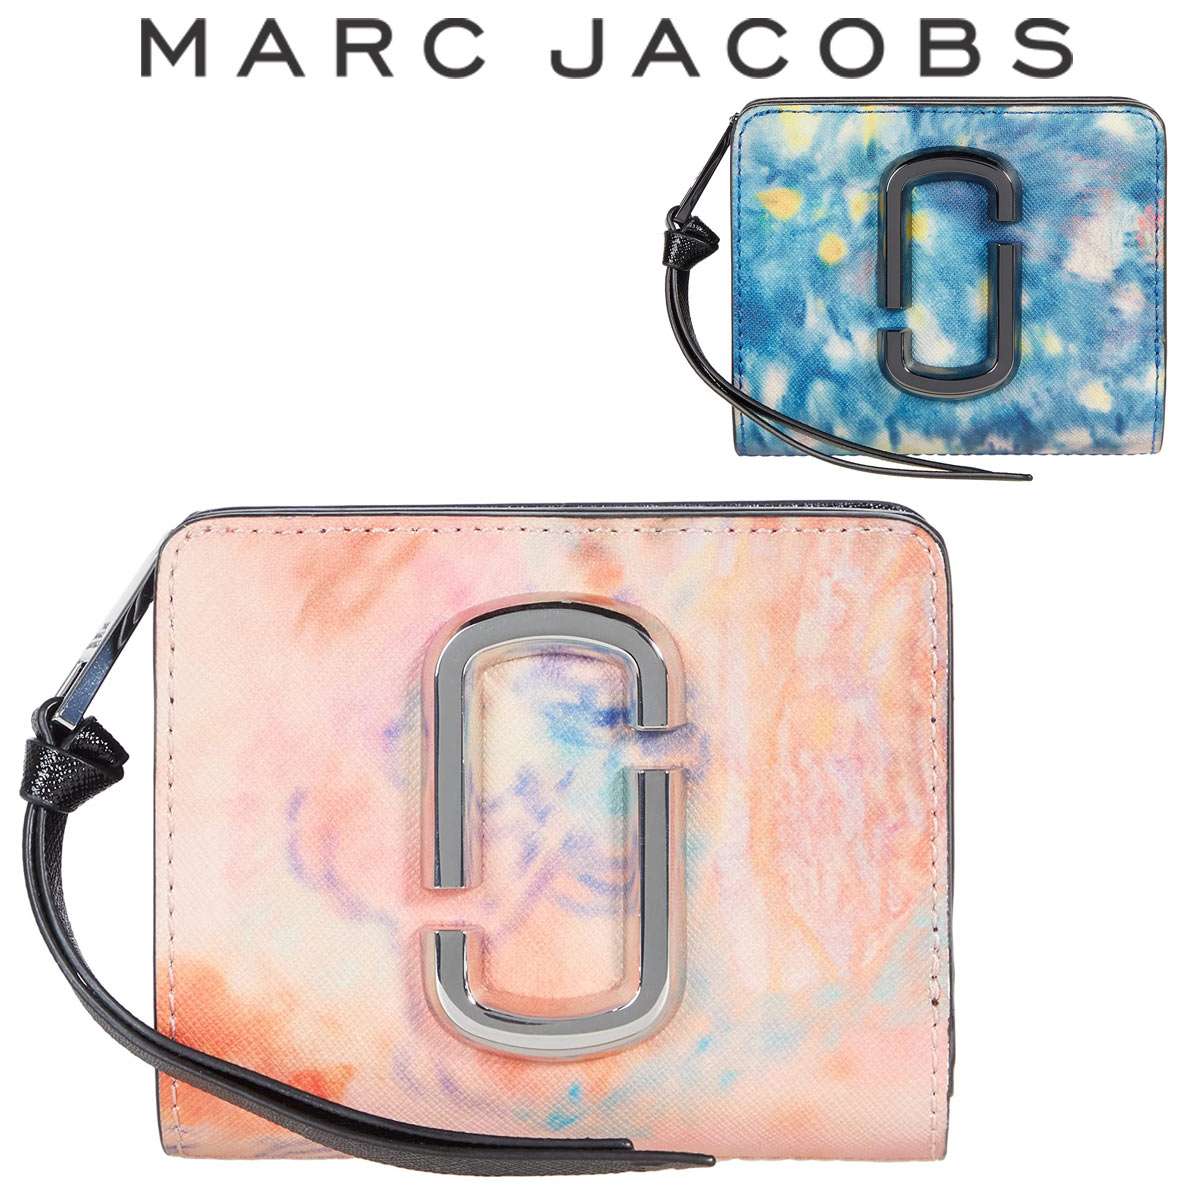 マークジェイコブス 財布 二つ折り 新品 レディース ボックス型 ブランド 小さめ 本革 Marc Jacobs